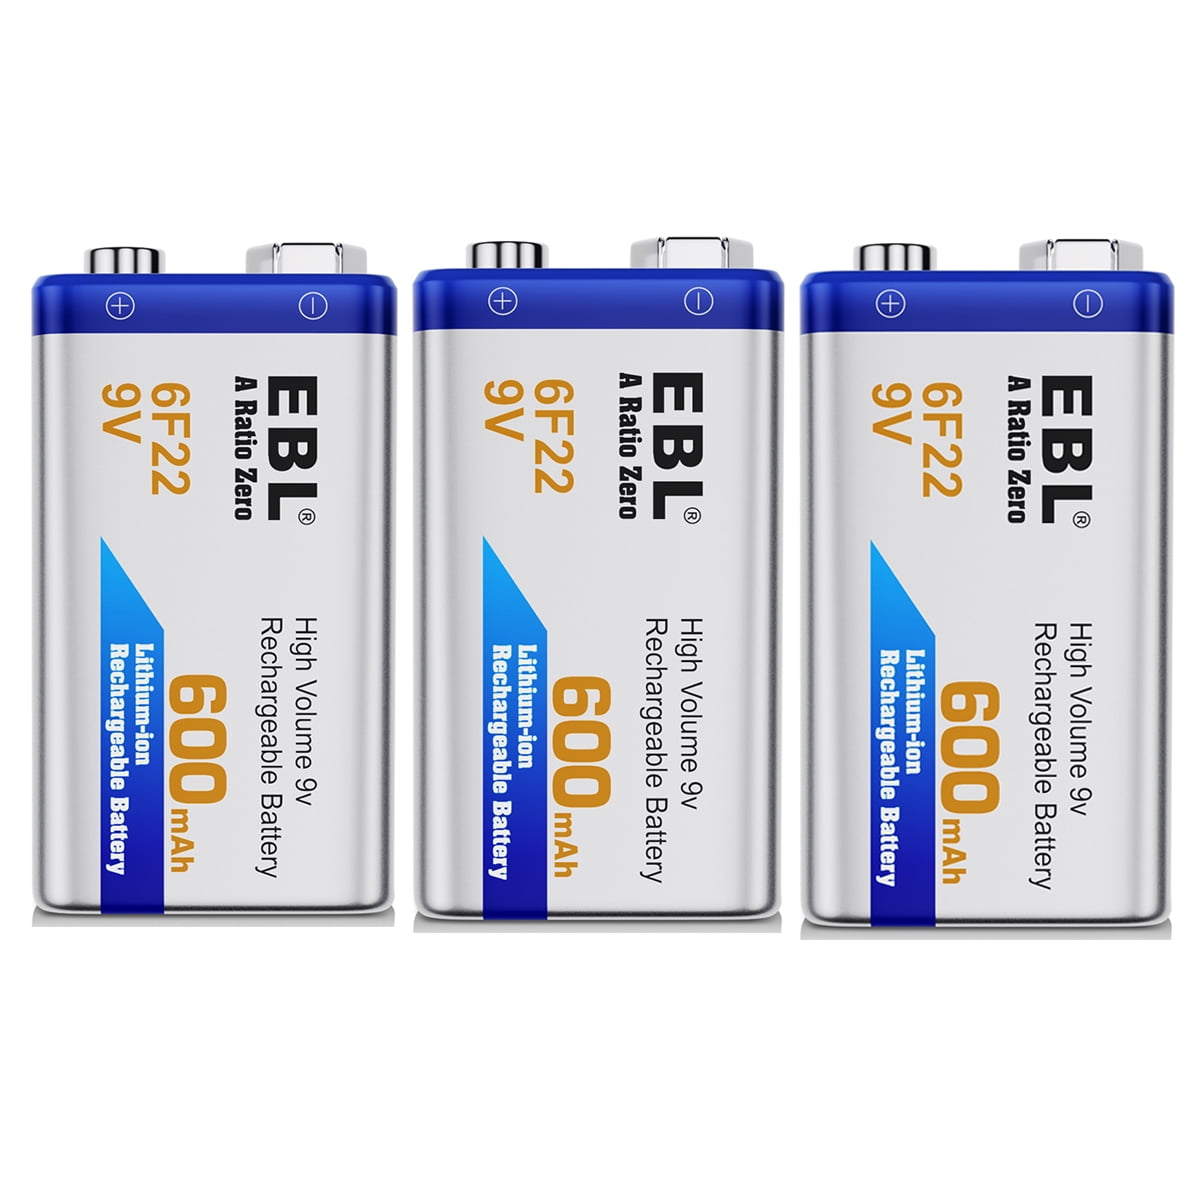 فقدت القلب وزن اعادة احياء  Energizer 00916 - 9 volt Nickel Metal Hydride Rechargeable Battery  (NH22NBP) - Walmart.com